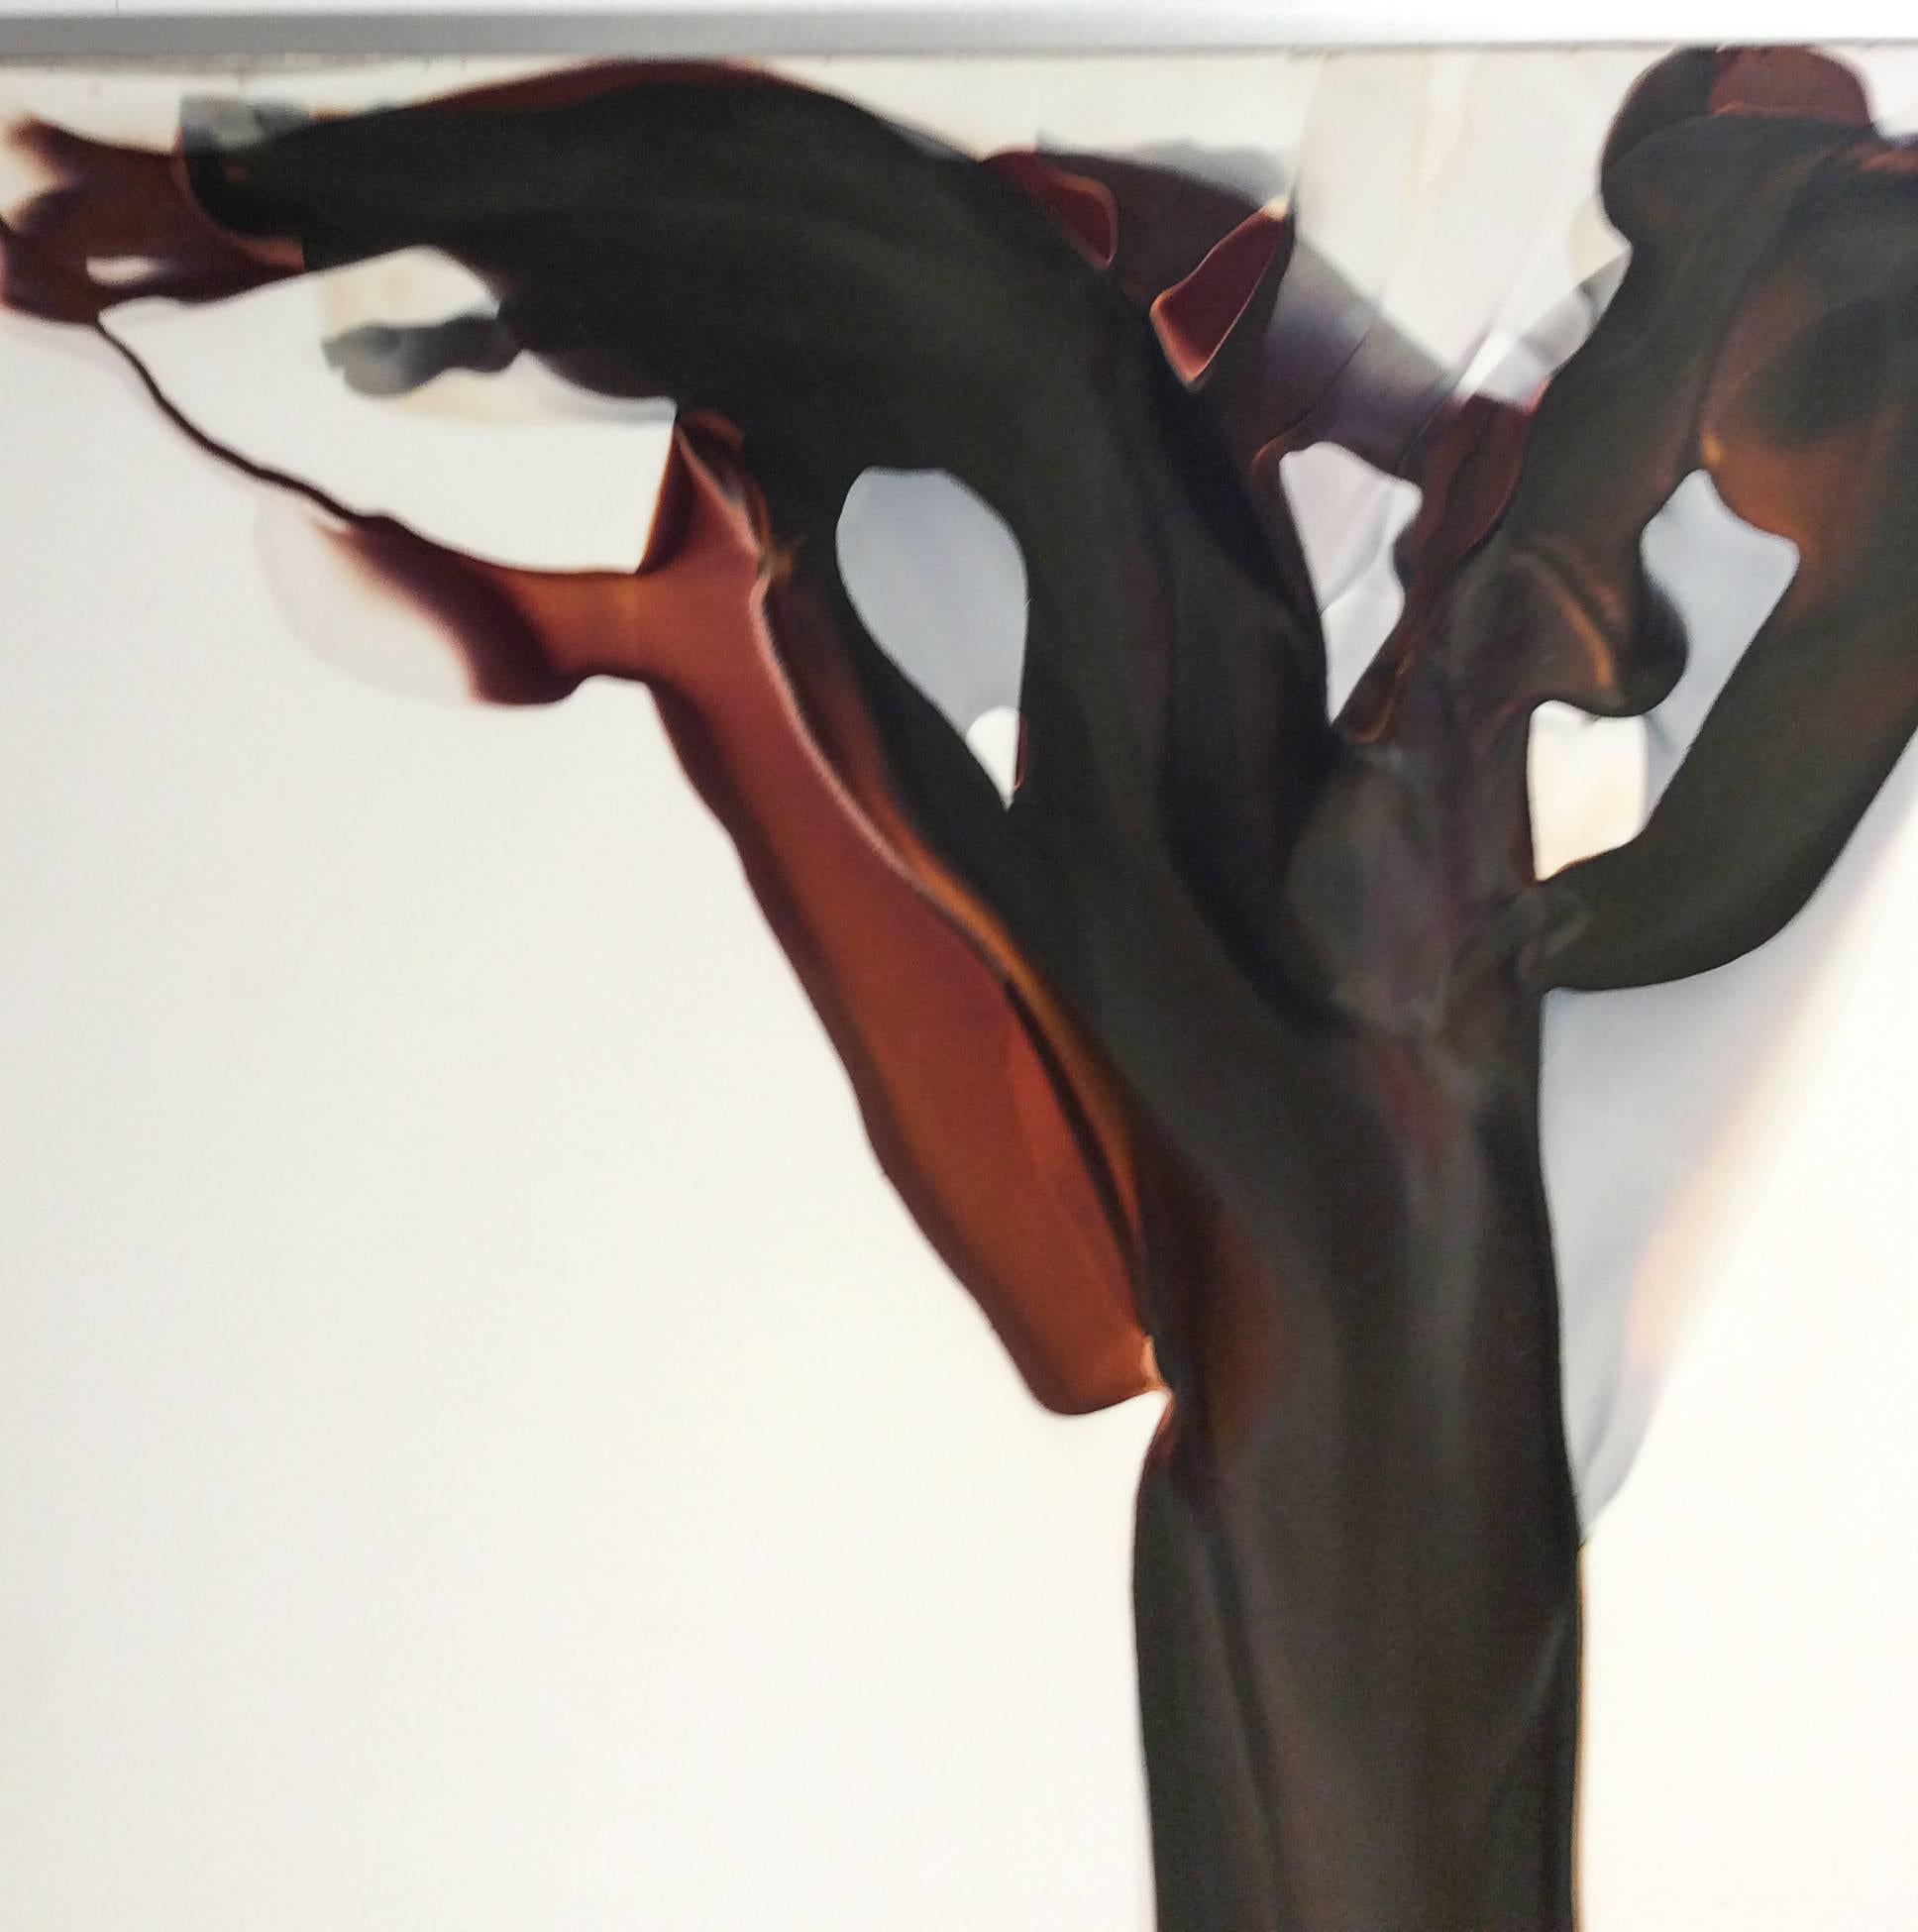 Veil No. 12 (Abstrakte fotografische Fotografie ohne Kamera mit erdfarbener Palette auf Weiß) – Painting von Birgit Blyth